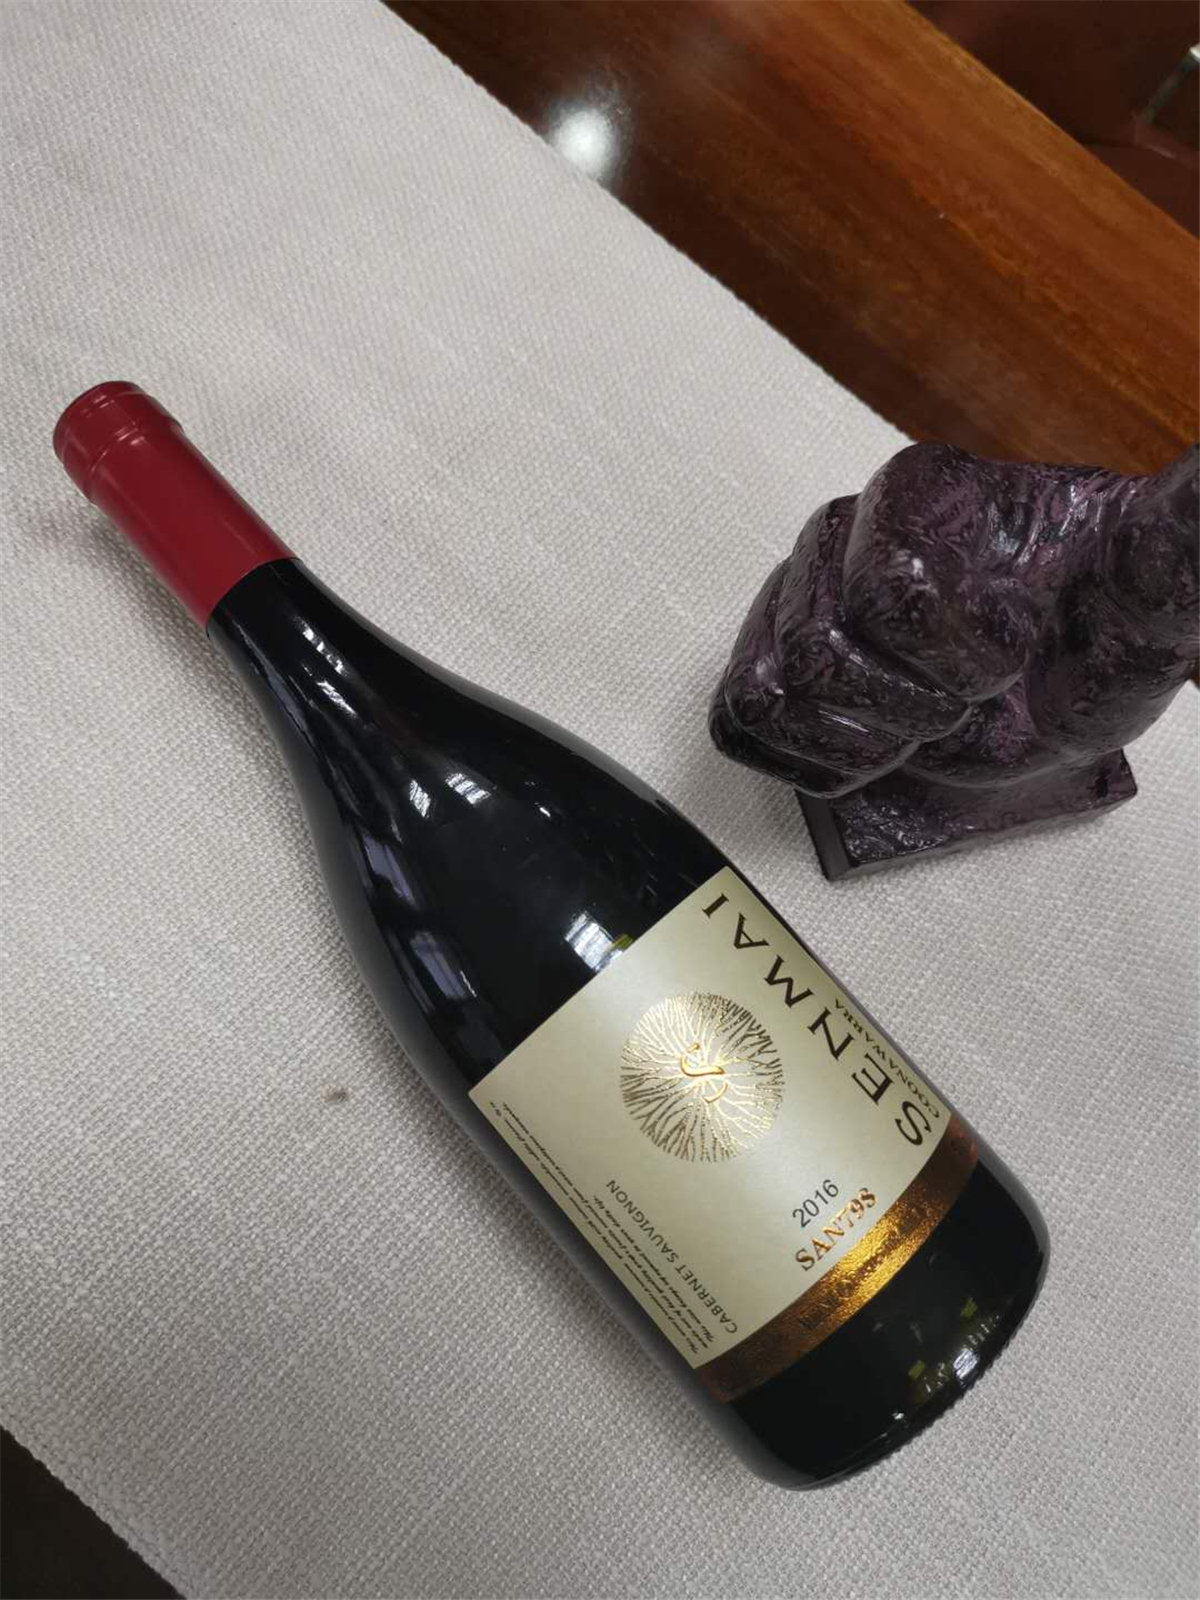 澳大利亚库纳瓦拉森脉SAN798赤霞珠干红葡萄酒红酒